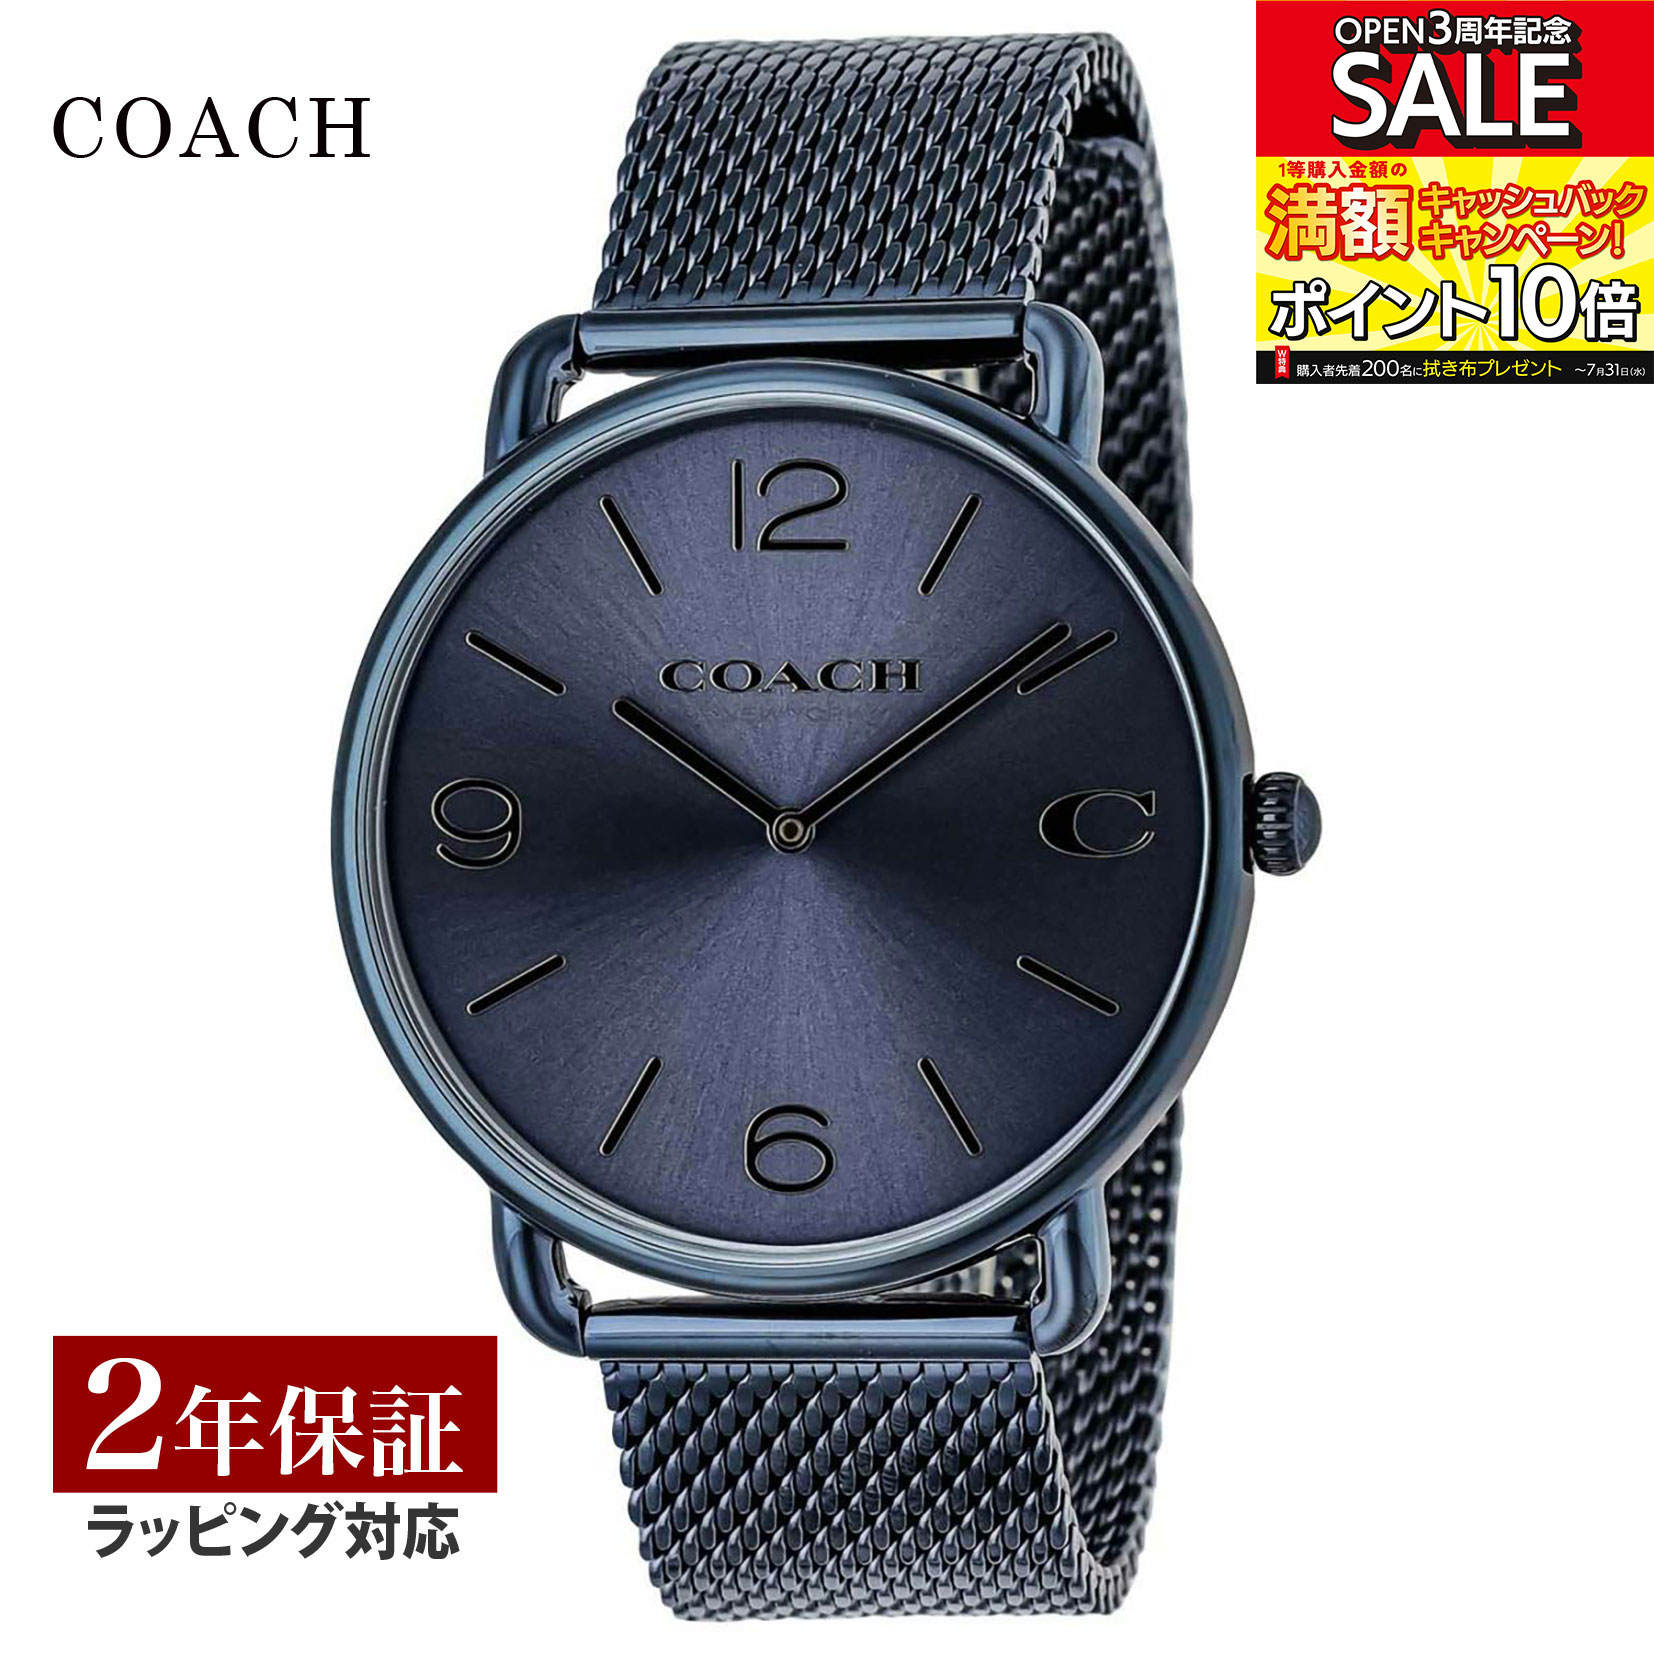 コーチ COACH メンズ 時計 ELLIOT エリオット クォーツ ネイビー 14602650 時計 腕時計 高級腕時計 ブランド